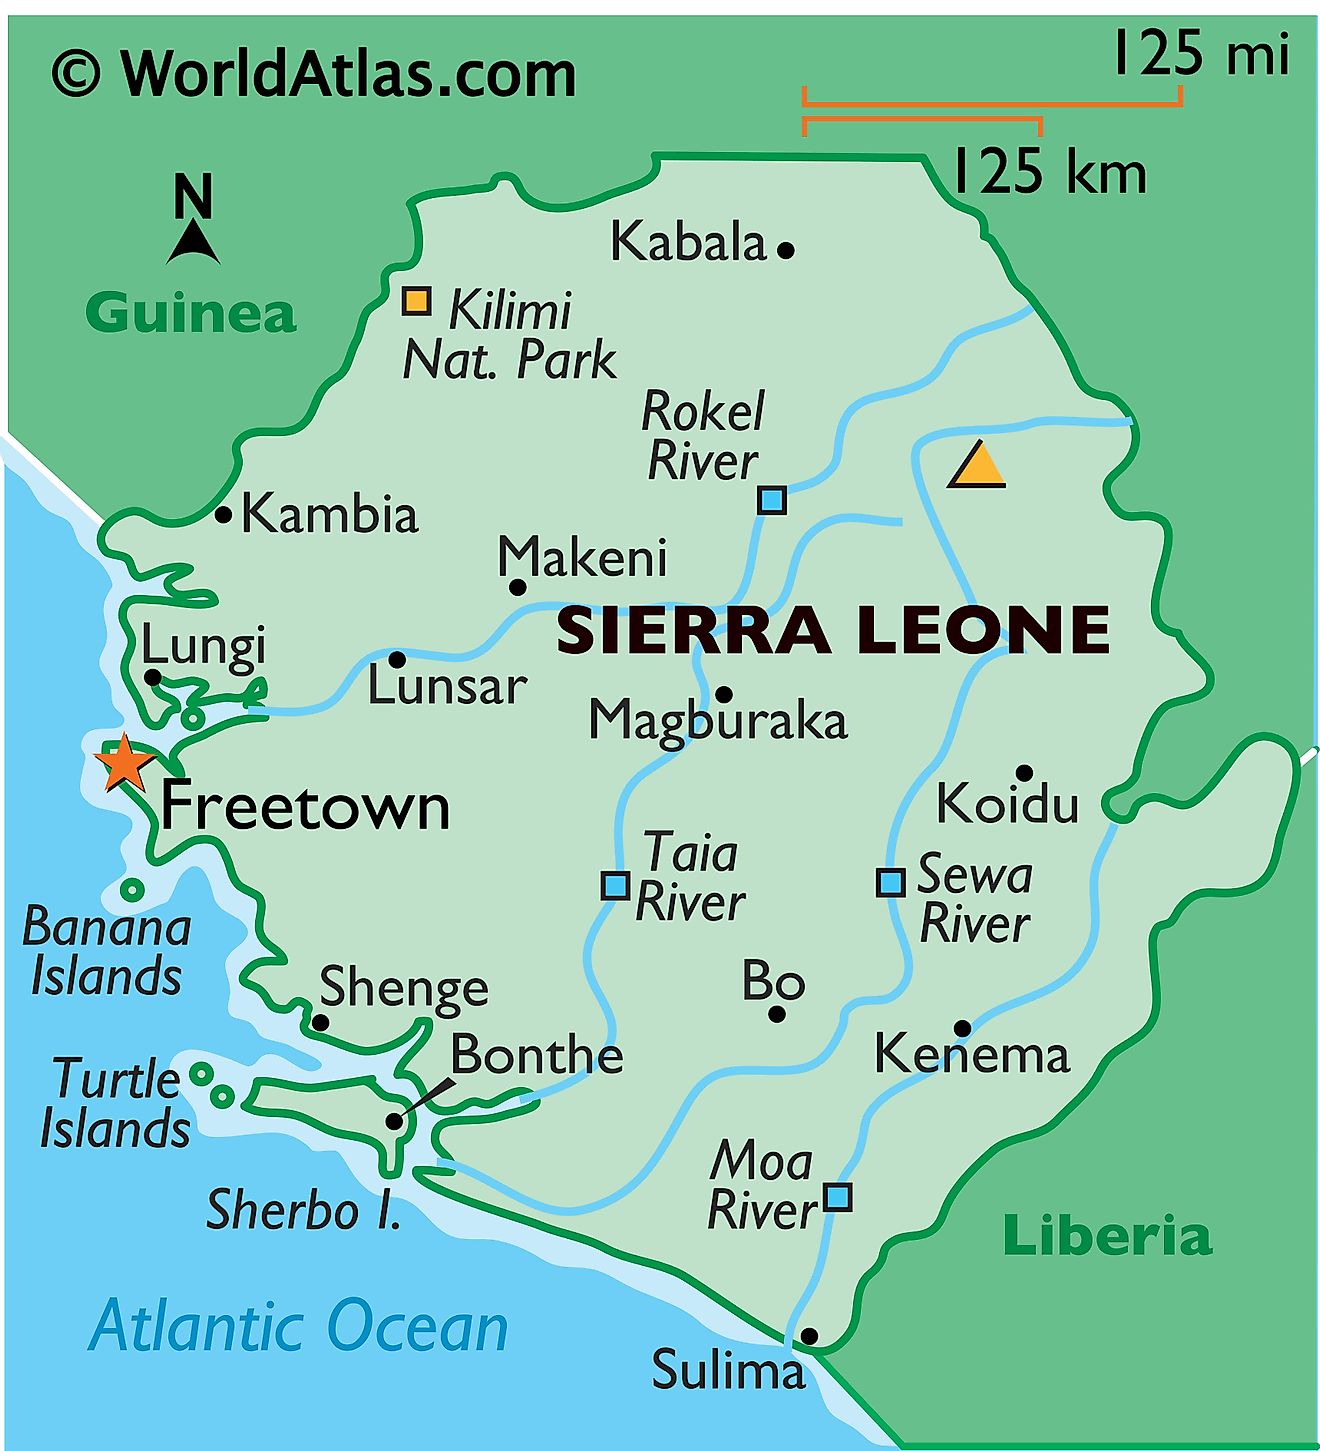 Mapa físico de Sierra Leona con límites estatales. Muestra las características físicas de Sierra Leona, incluido el relieve, los ríos, las islas, el punto más alto y las principales ciudades.